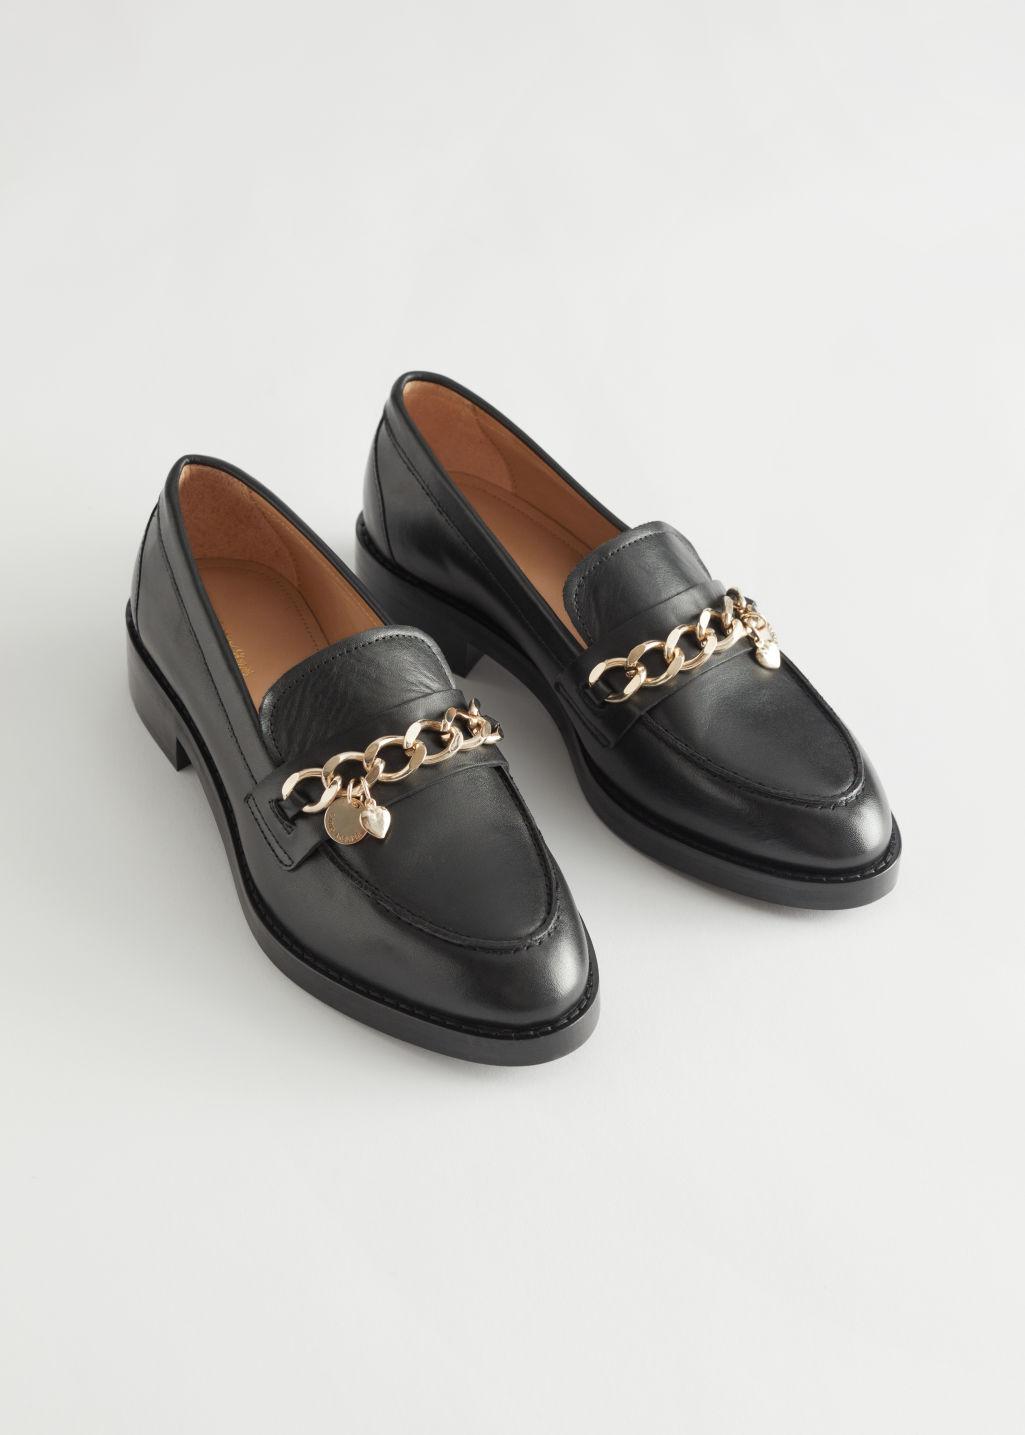 Emuler liste Løft dig op & Other Stories Chain Embellished Leather Loafers in Black | Lyst